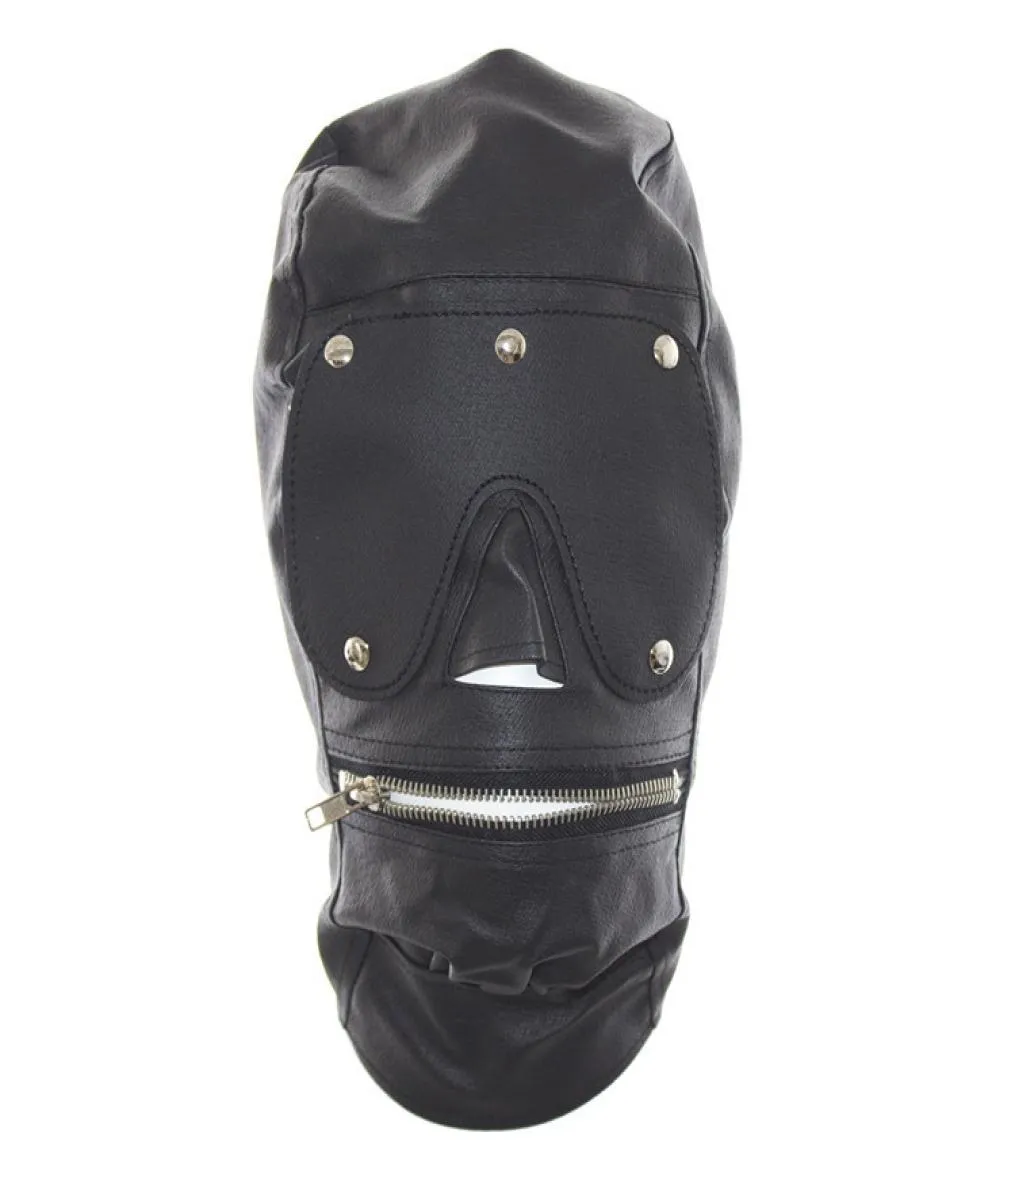 Erstklassige PU-Leder-Vollgesichtsmaske mit Reißverschluss, Maulkorb, offener Sklaven-Reißverschluss-Mund, vollständig geschlossene Kopfbedeckungshaube für Rollenspiele, sexy, A5029697